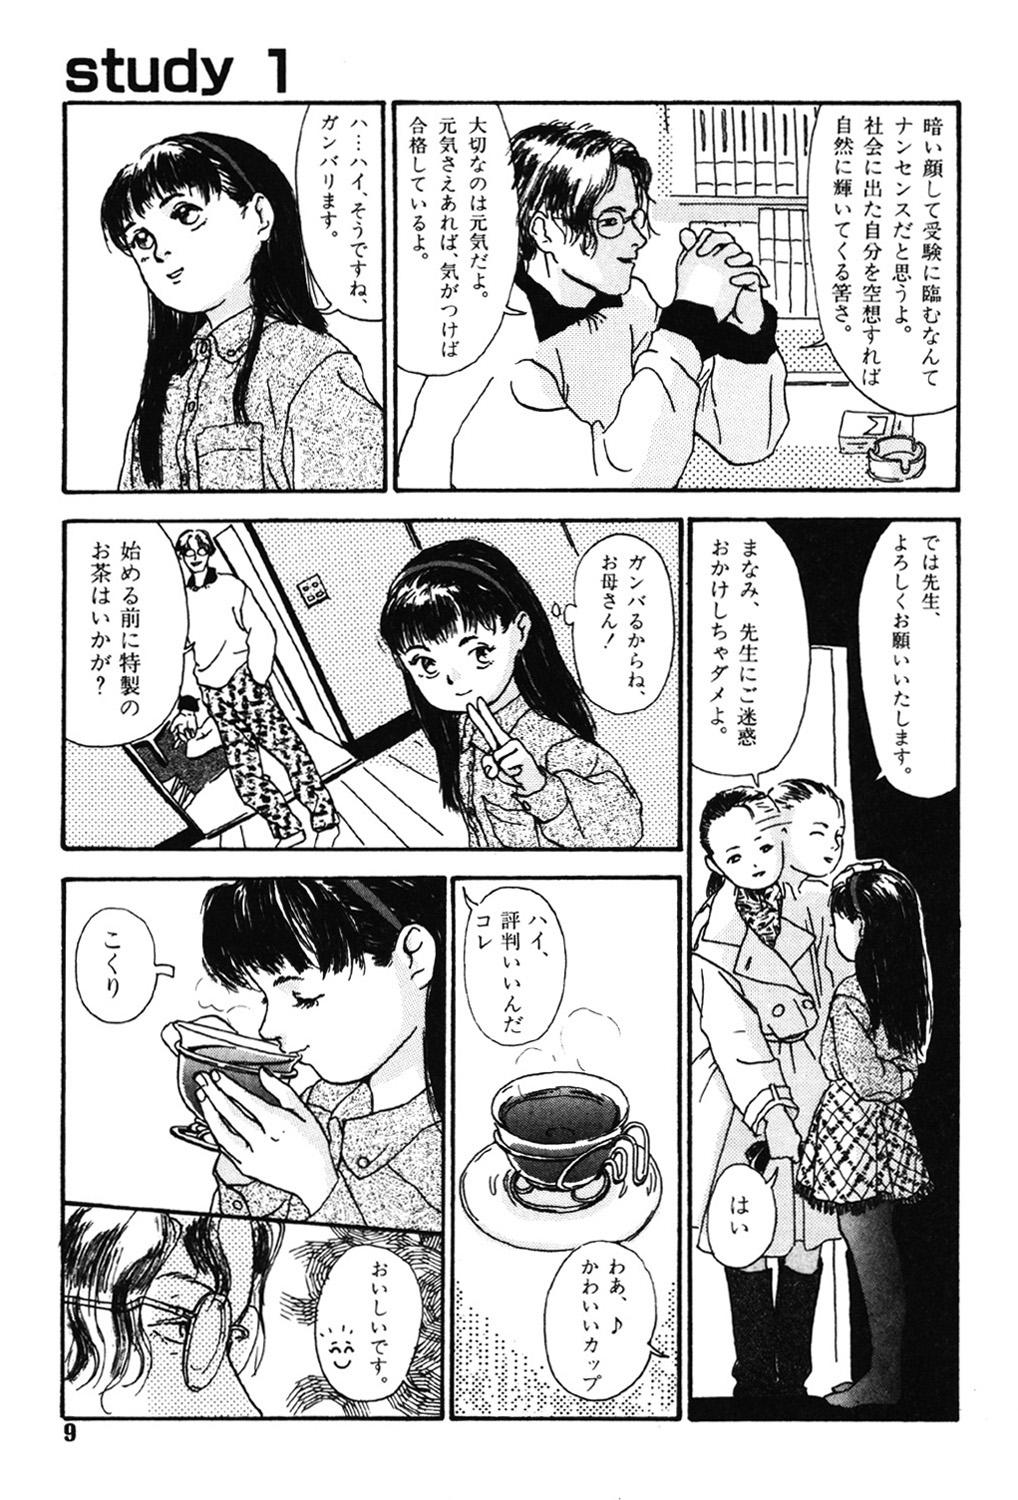 19yo Sotsugyoushiki wa Hadaka de Groupfuck - Page 9